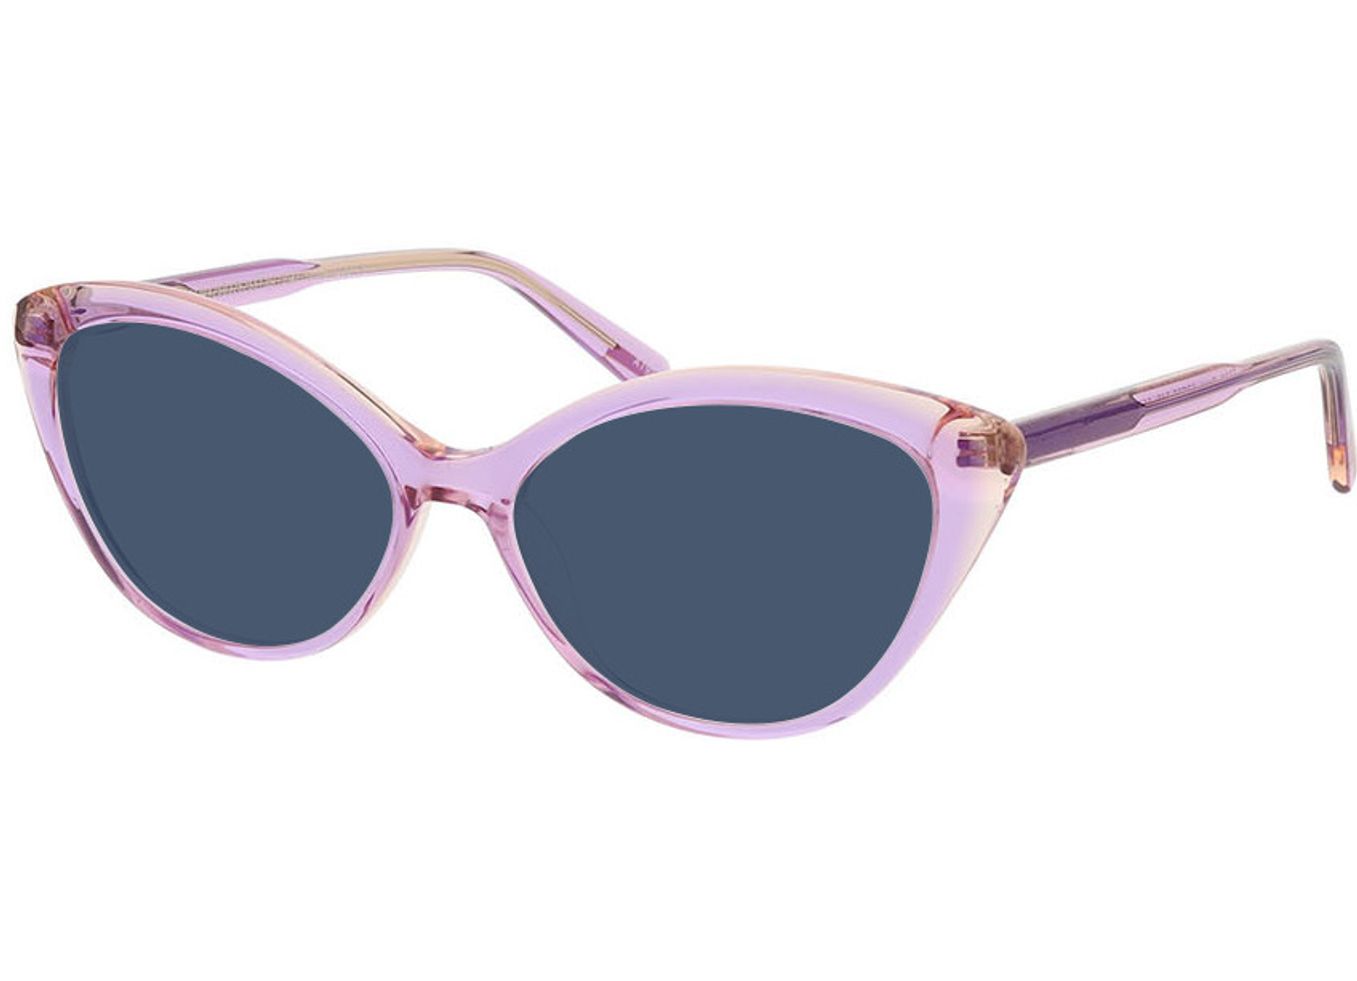 Rose - lila/beige Sonnenbrille ohne Sehstärke, Vollrand, geometric von Brille24 Collection